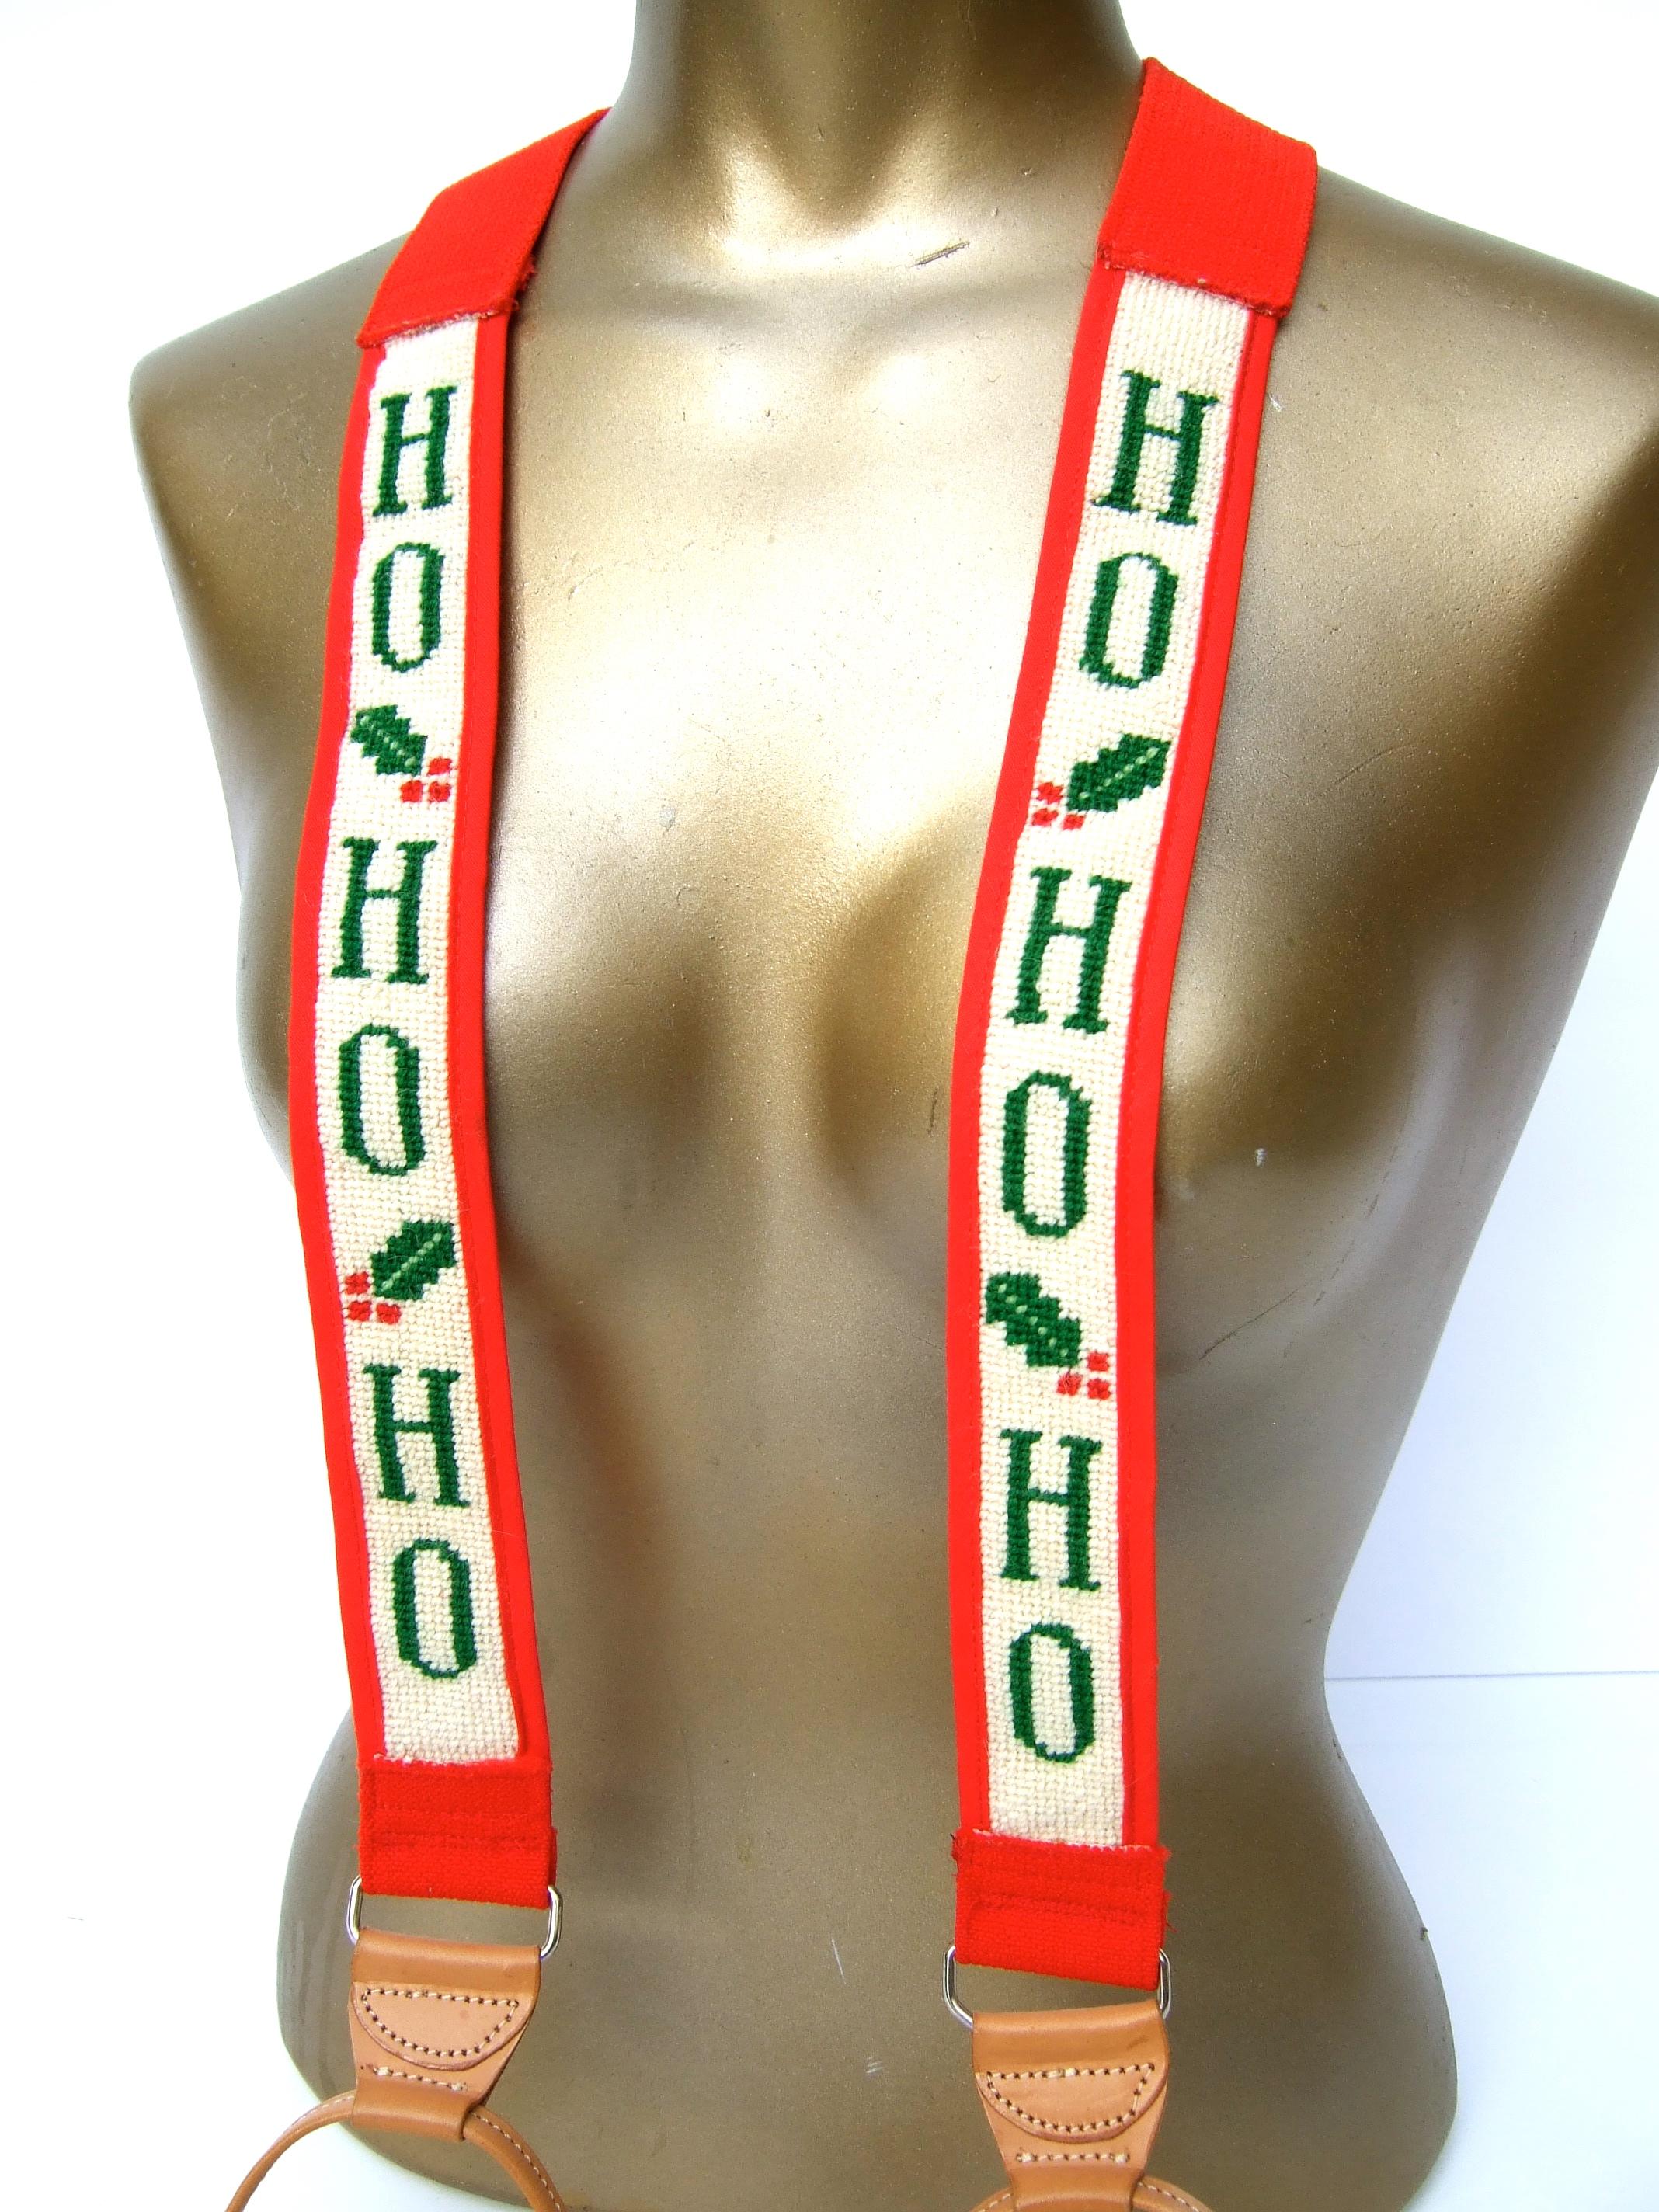 Bretelles fantaisistes à l'aiguille sur le thème de Noël, c. années 1980
Ces charmantes bretelles unisexes cousues à la main sont ornées de panneaux à l'aiguille représentant le gui et le jingle Ho-Ho-Ho. 

La partie rouge unie des bretelles est